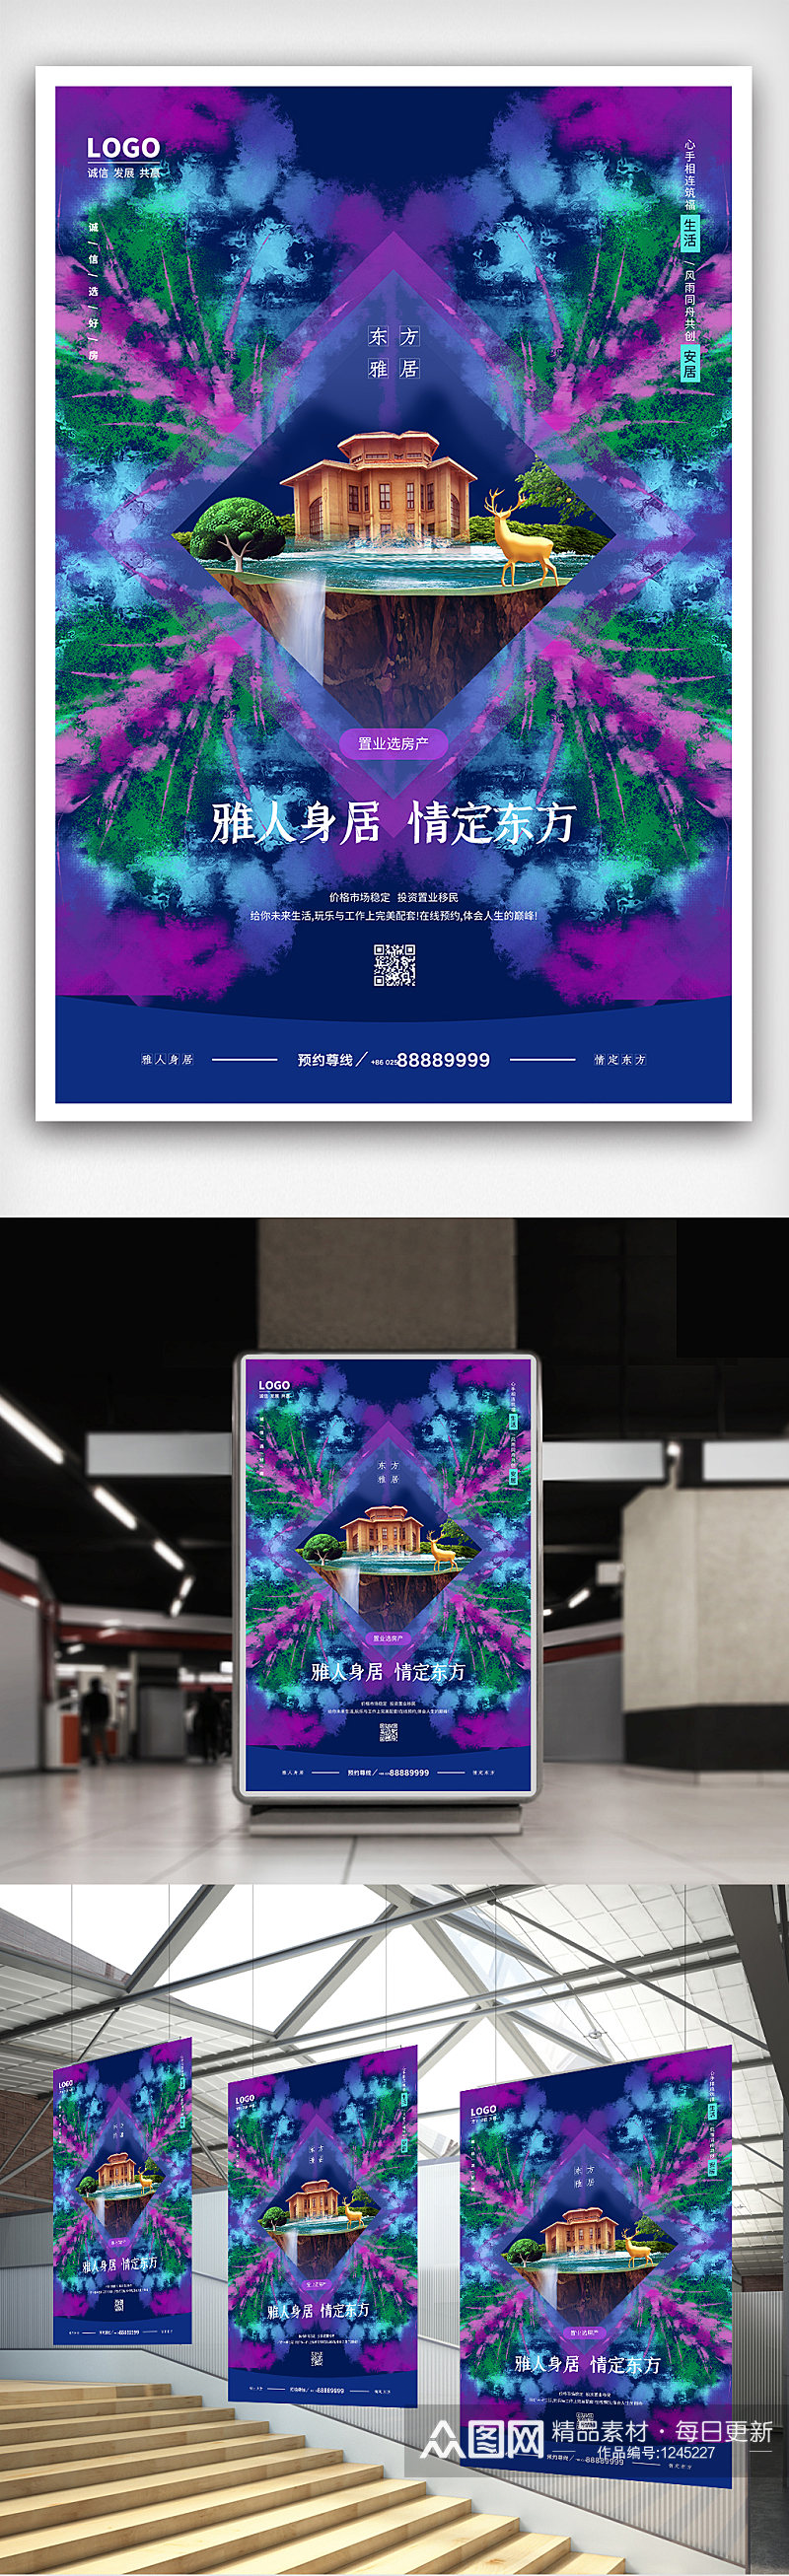 蓝紫色扎染风格房地产艺术海报设计素材